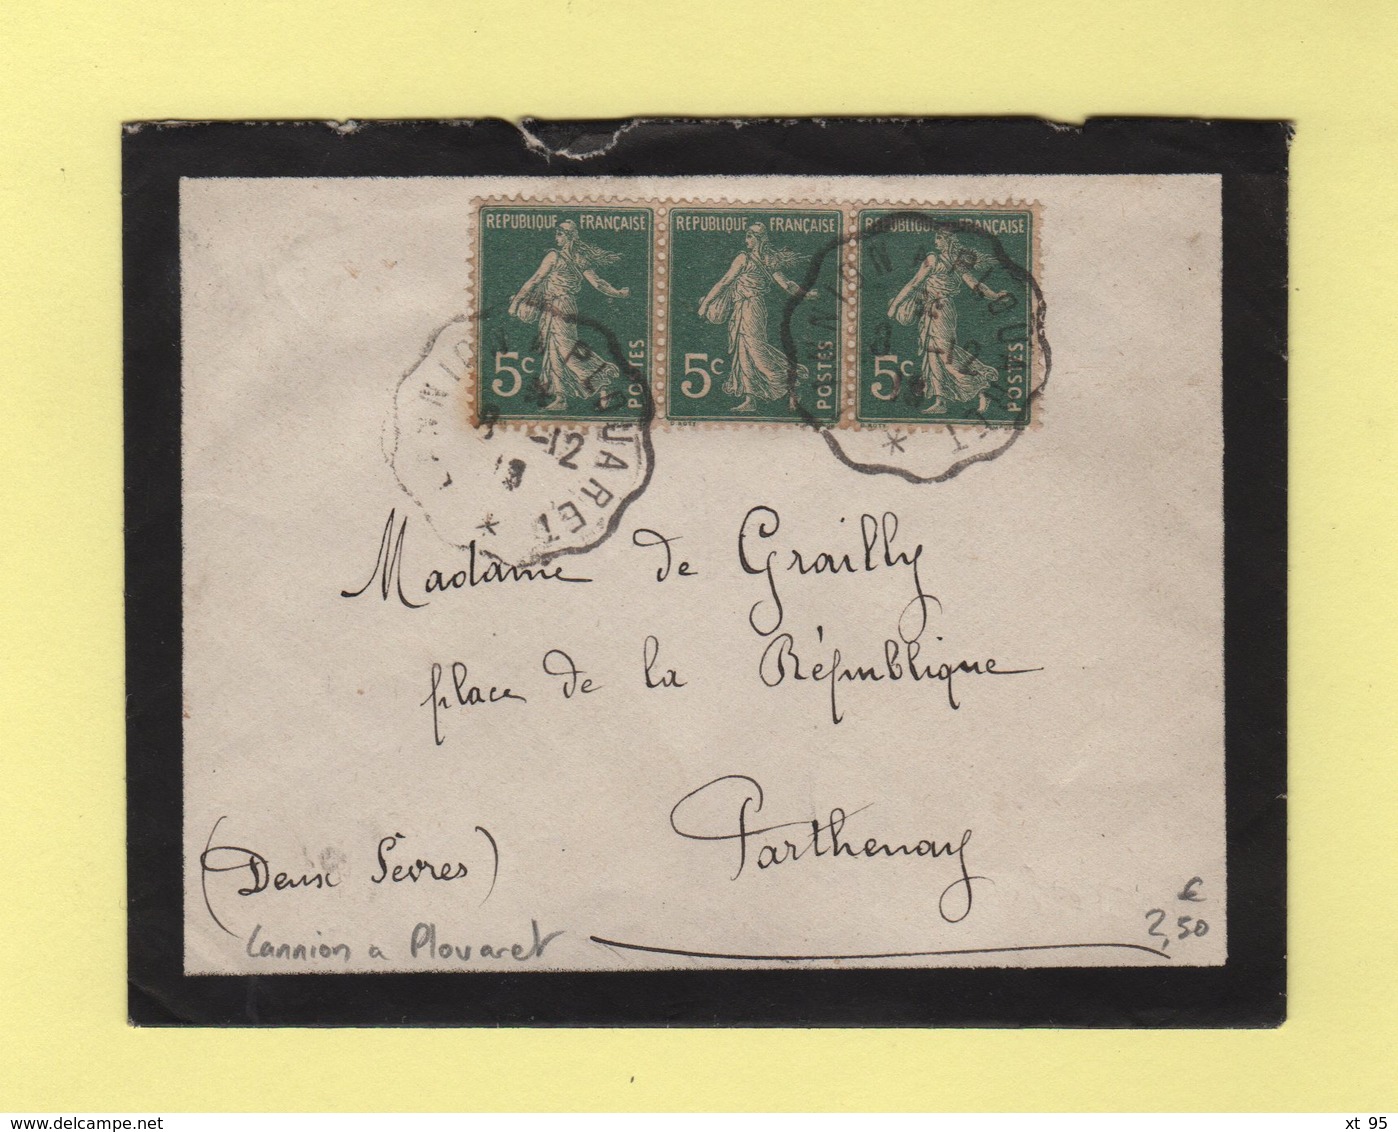 Convoyeur - Lannion à Plouaret - 1918 - Railway Post